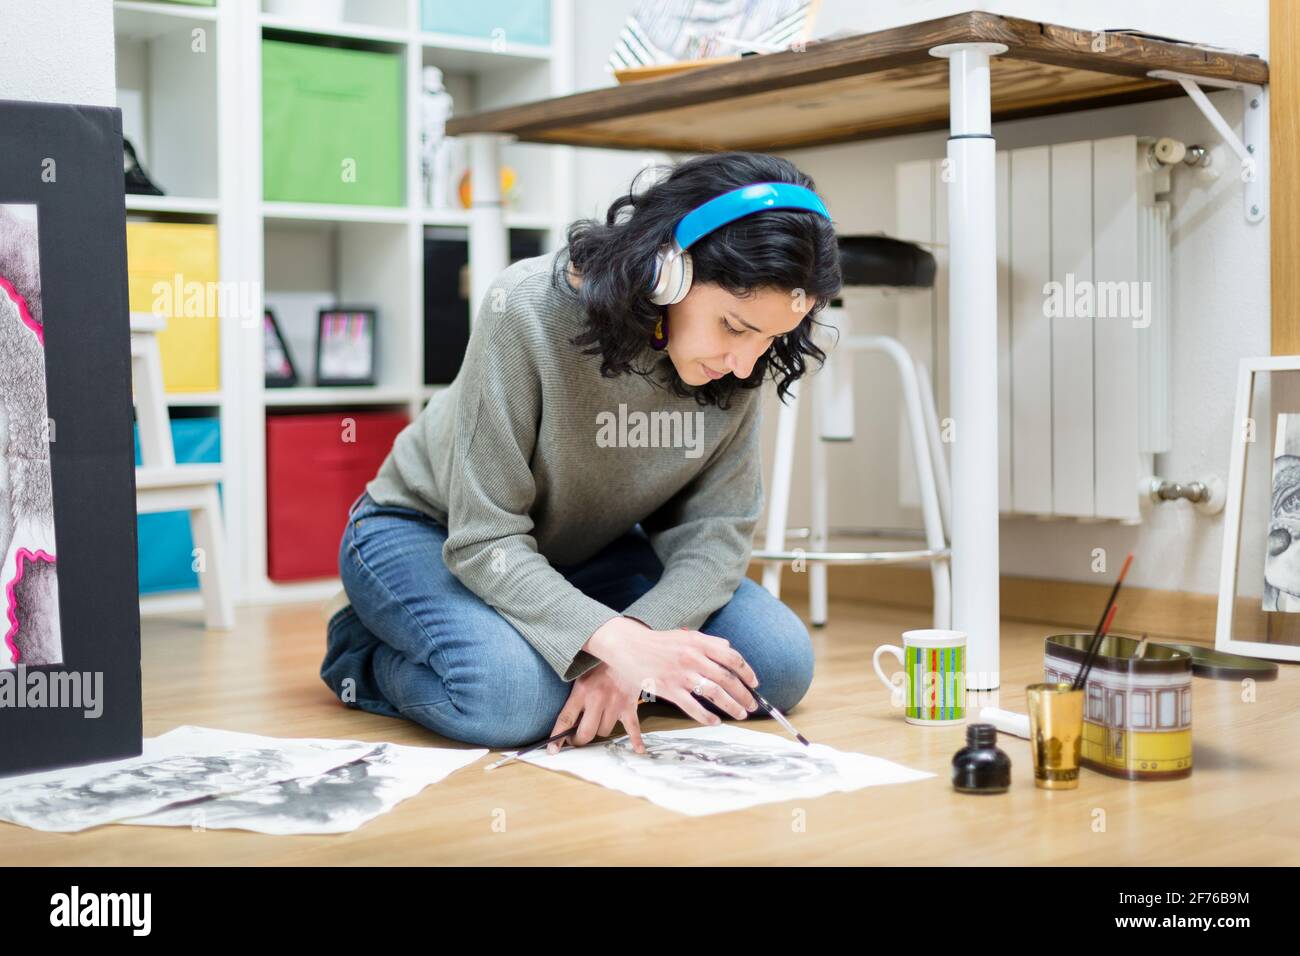 Femme artiste assise sur le sol, peinture sur papier avec une brosse. Elle apprend à dessiner à la maison. Banque D'Images